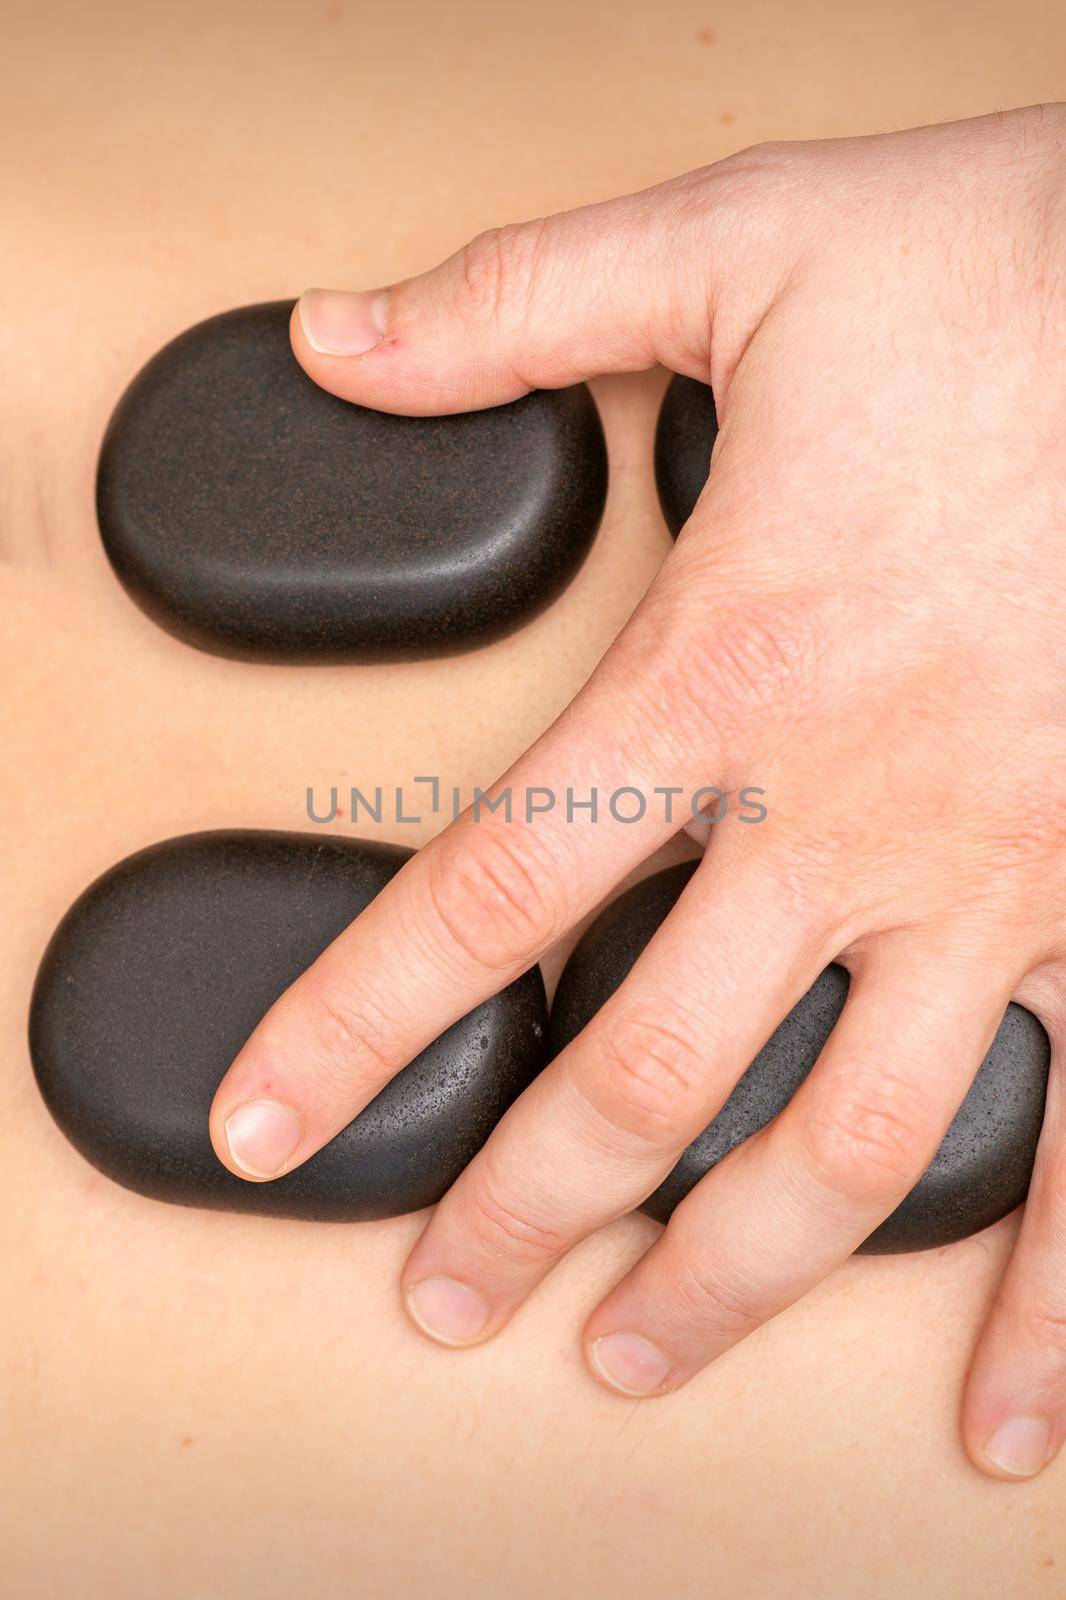 Hot stone massage therapy. Caucasian young man getting a hot stone massage on back at spa salon. by okskukuruza